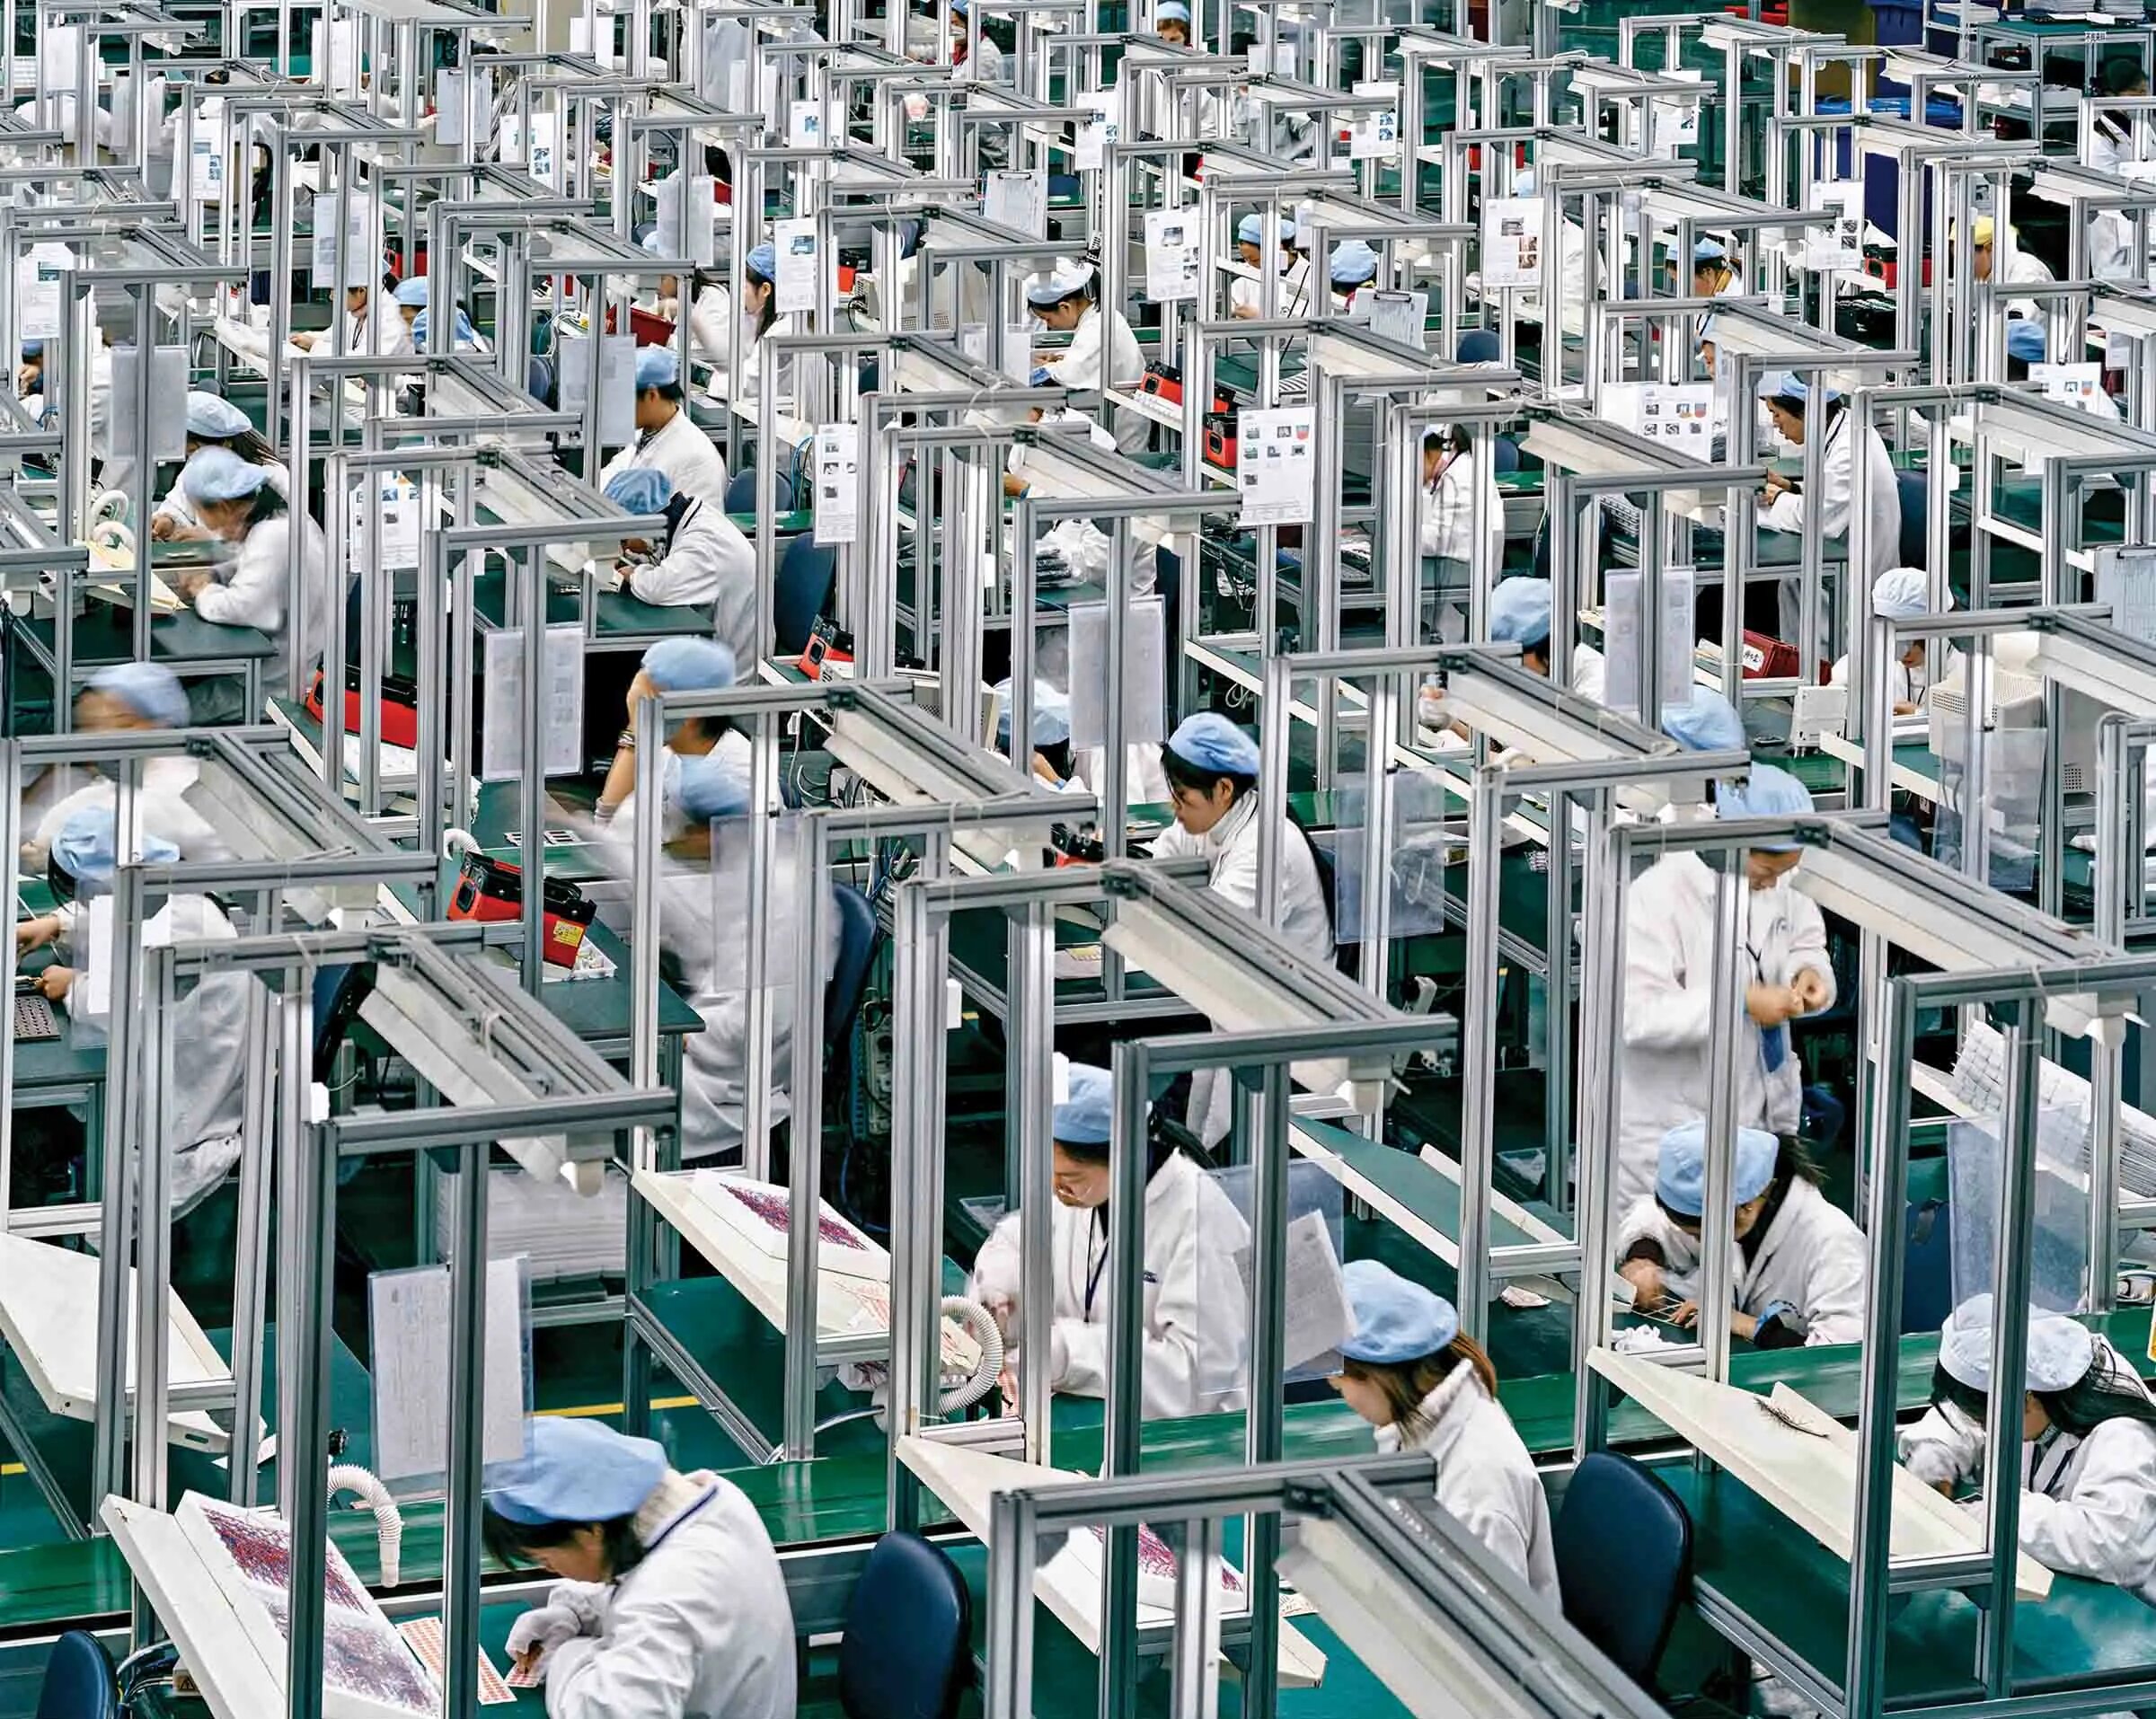 Хим промышленность Китая. Легкая промышленность Китая. Текстильная промышленность Китая. Китайский завод. Производители электроники тайвань